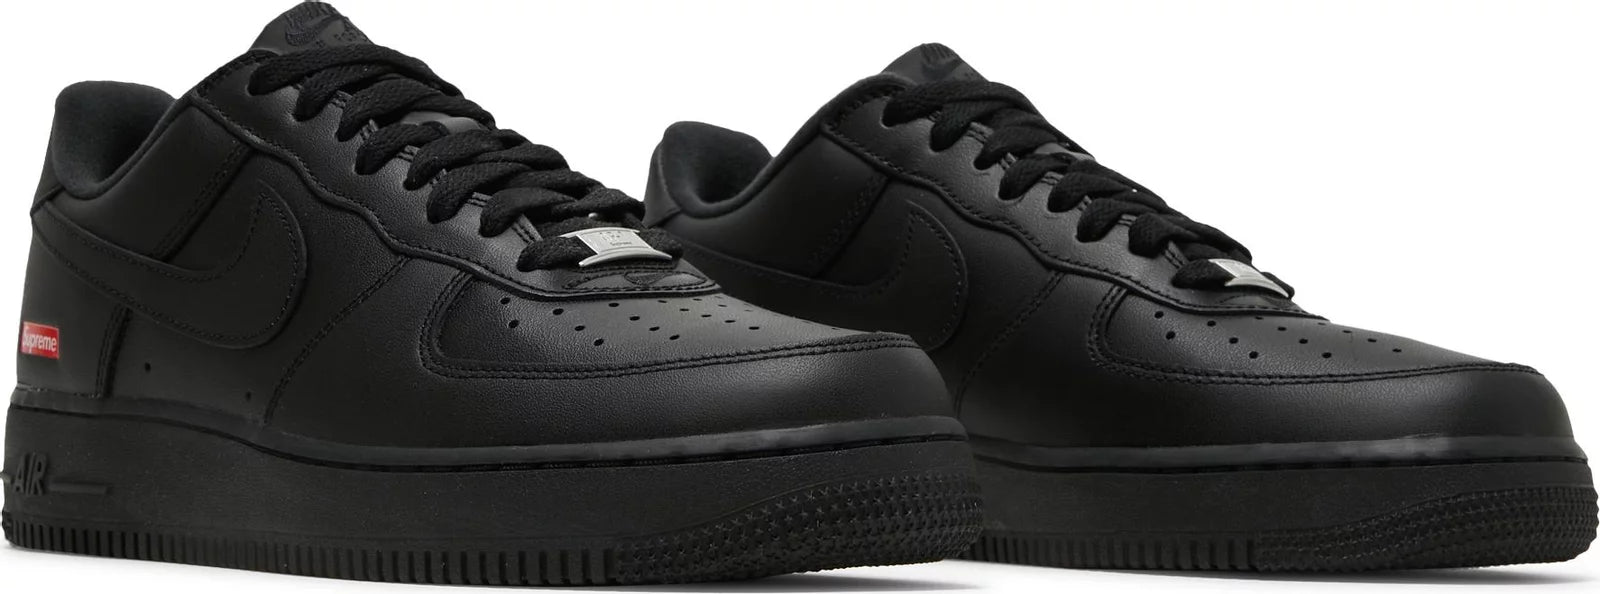 Air Force dress 1 Low Supreme Black - Sneakersbe Sneakers Sale Online